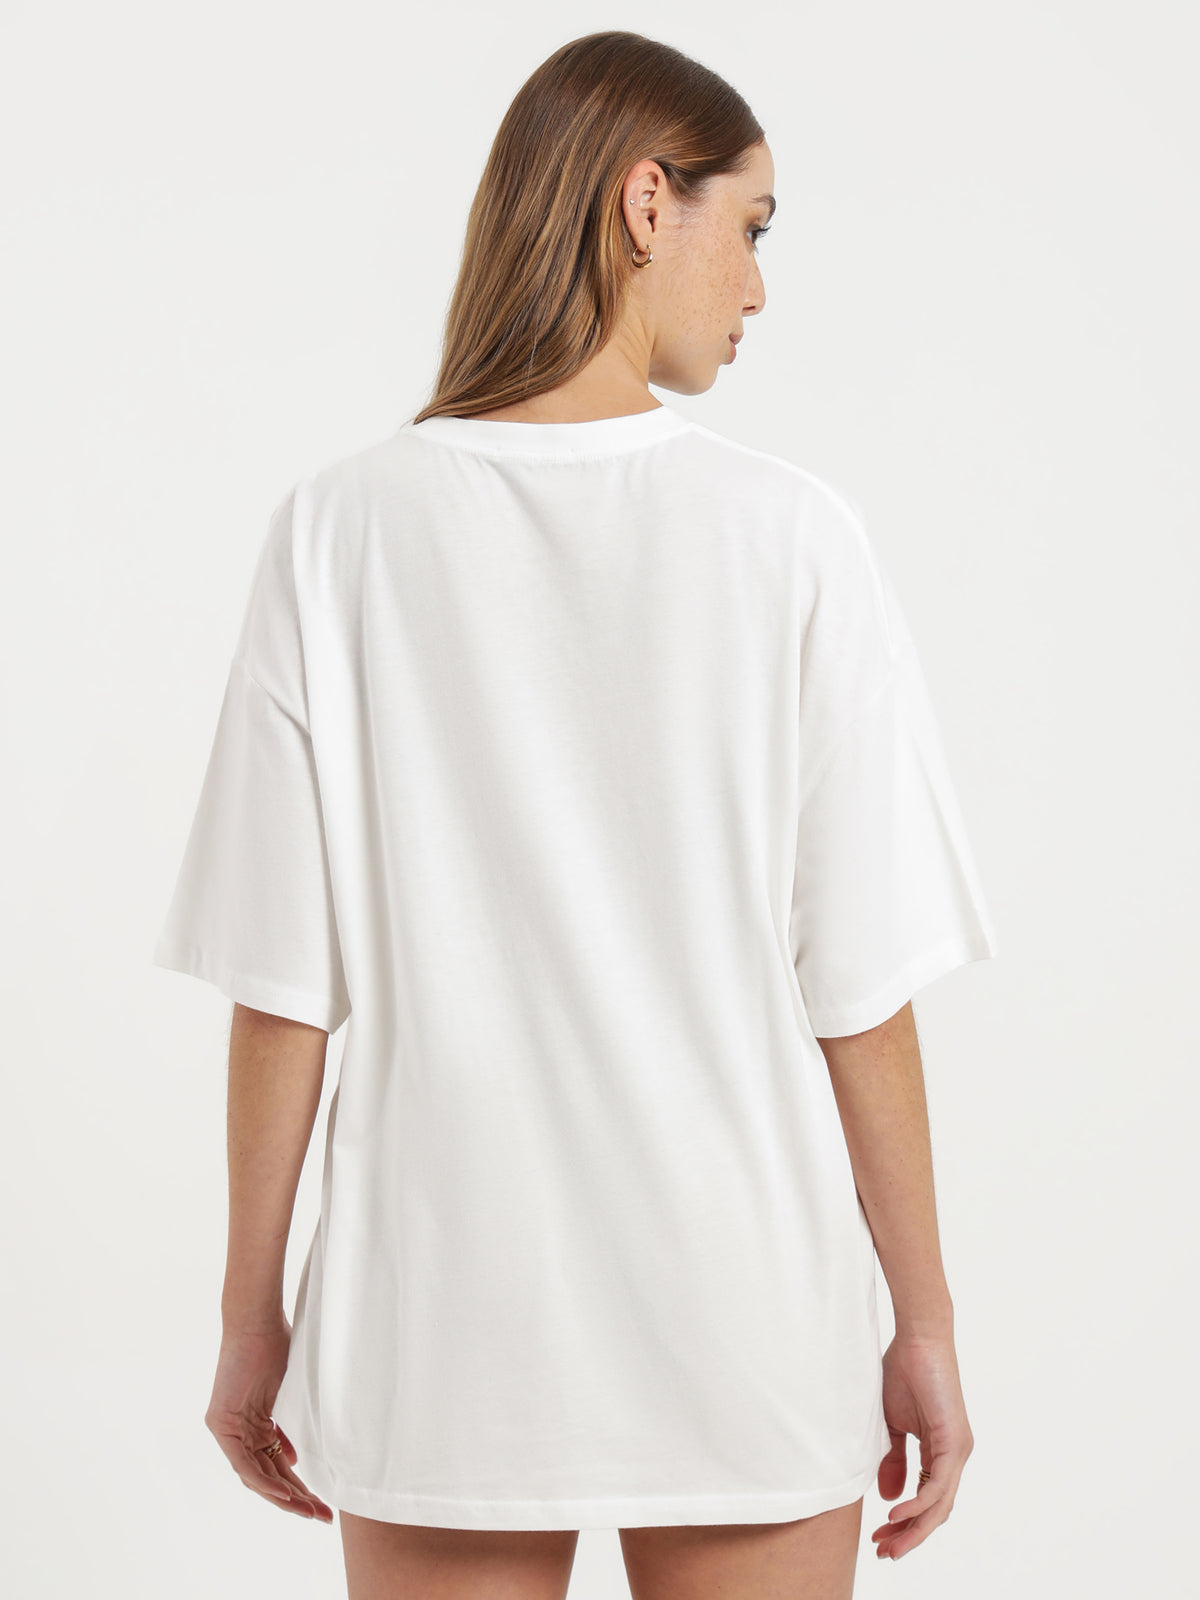 Beyond Originals Oversized T-Shirt in White &amp; Desert